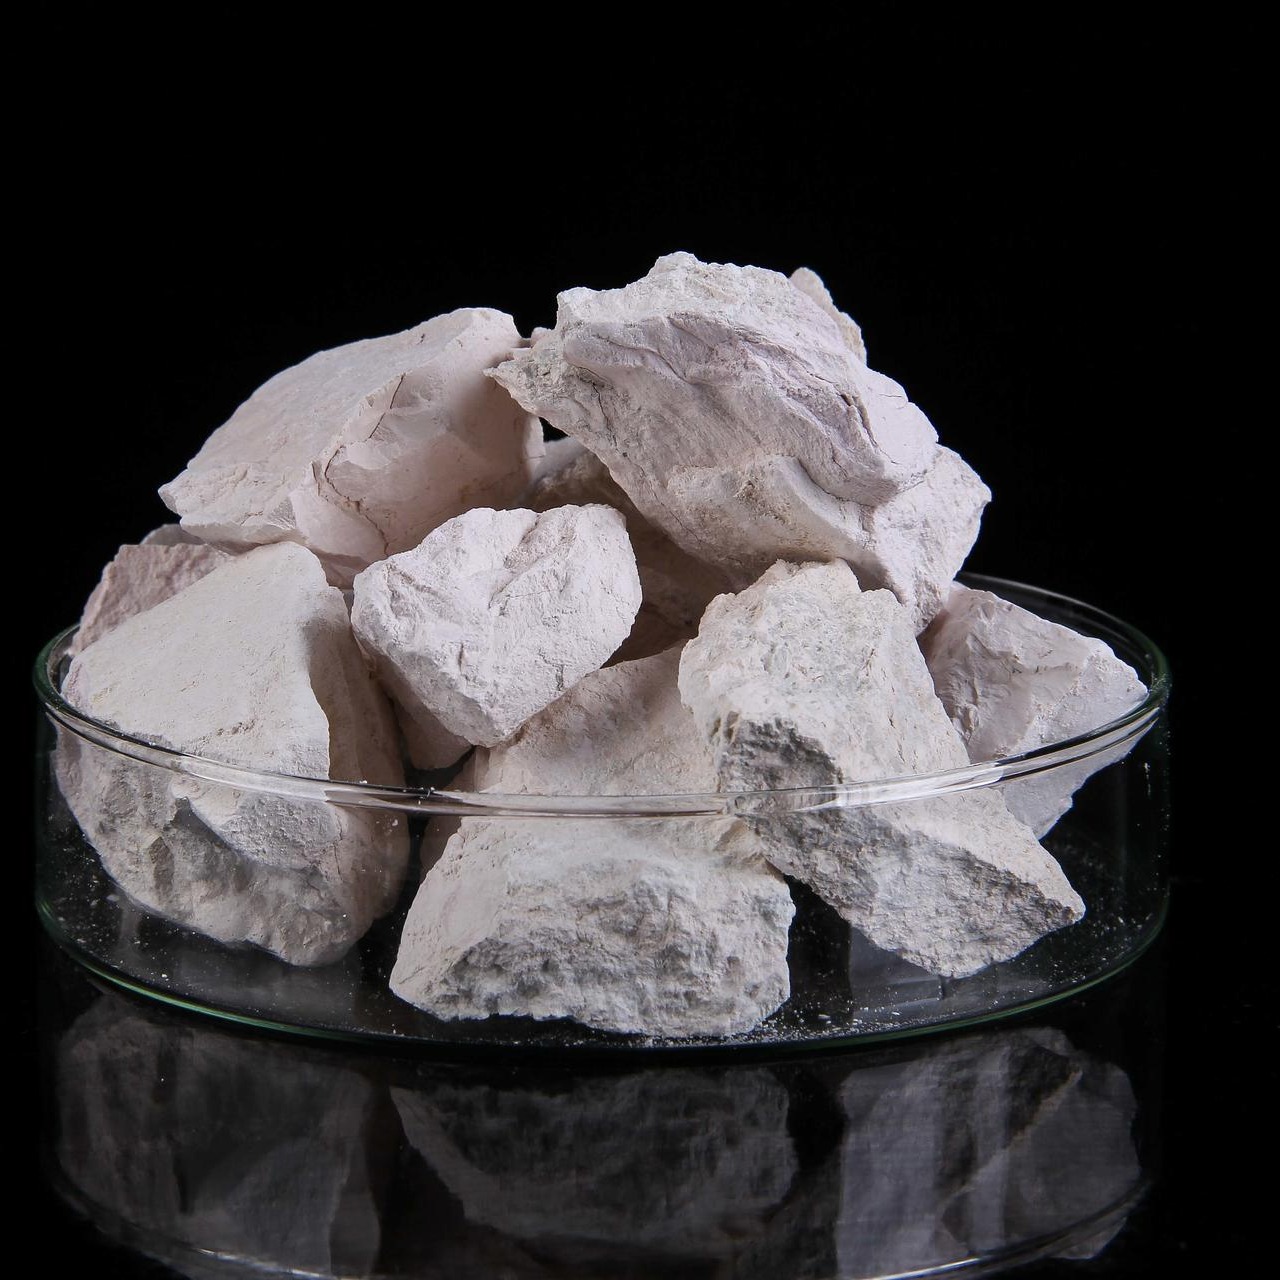 52-66% 水镁石氢氧化镁 价格优越 水镁石矿山厂家直供 煅烧水镁石 水镁石原矿